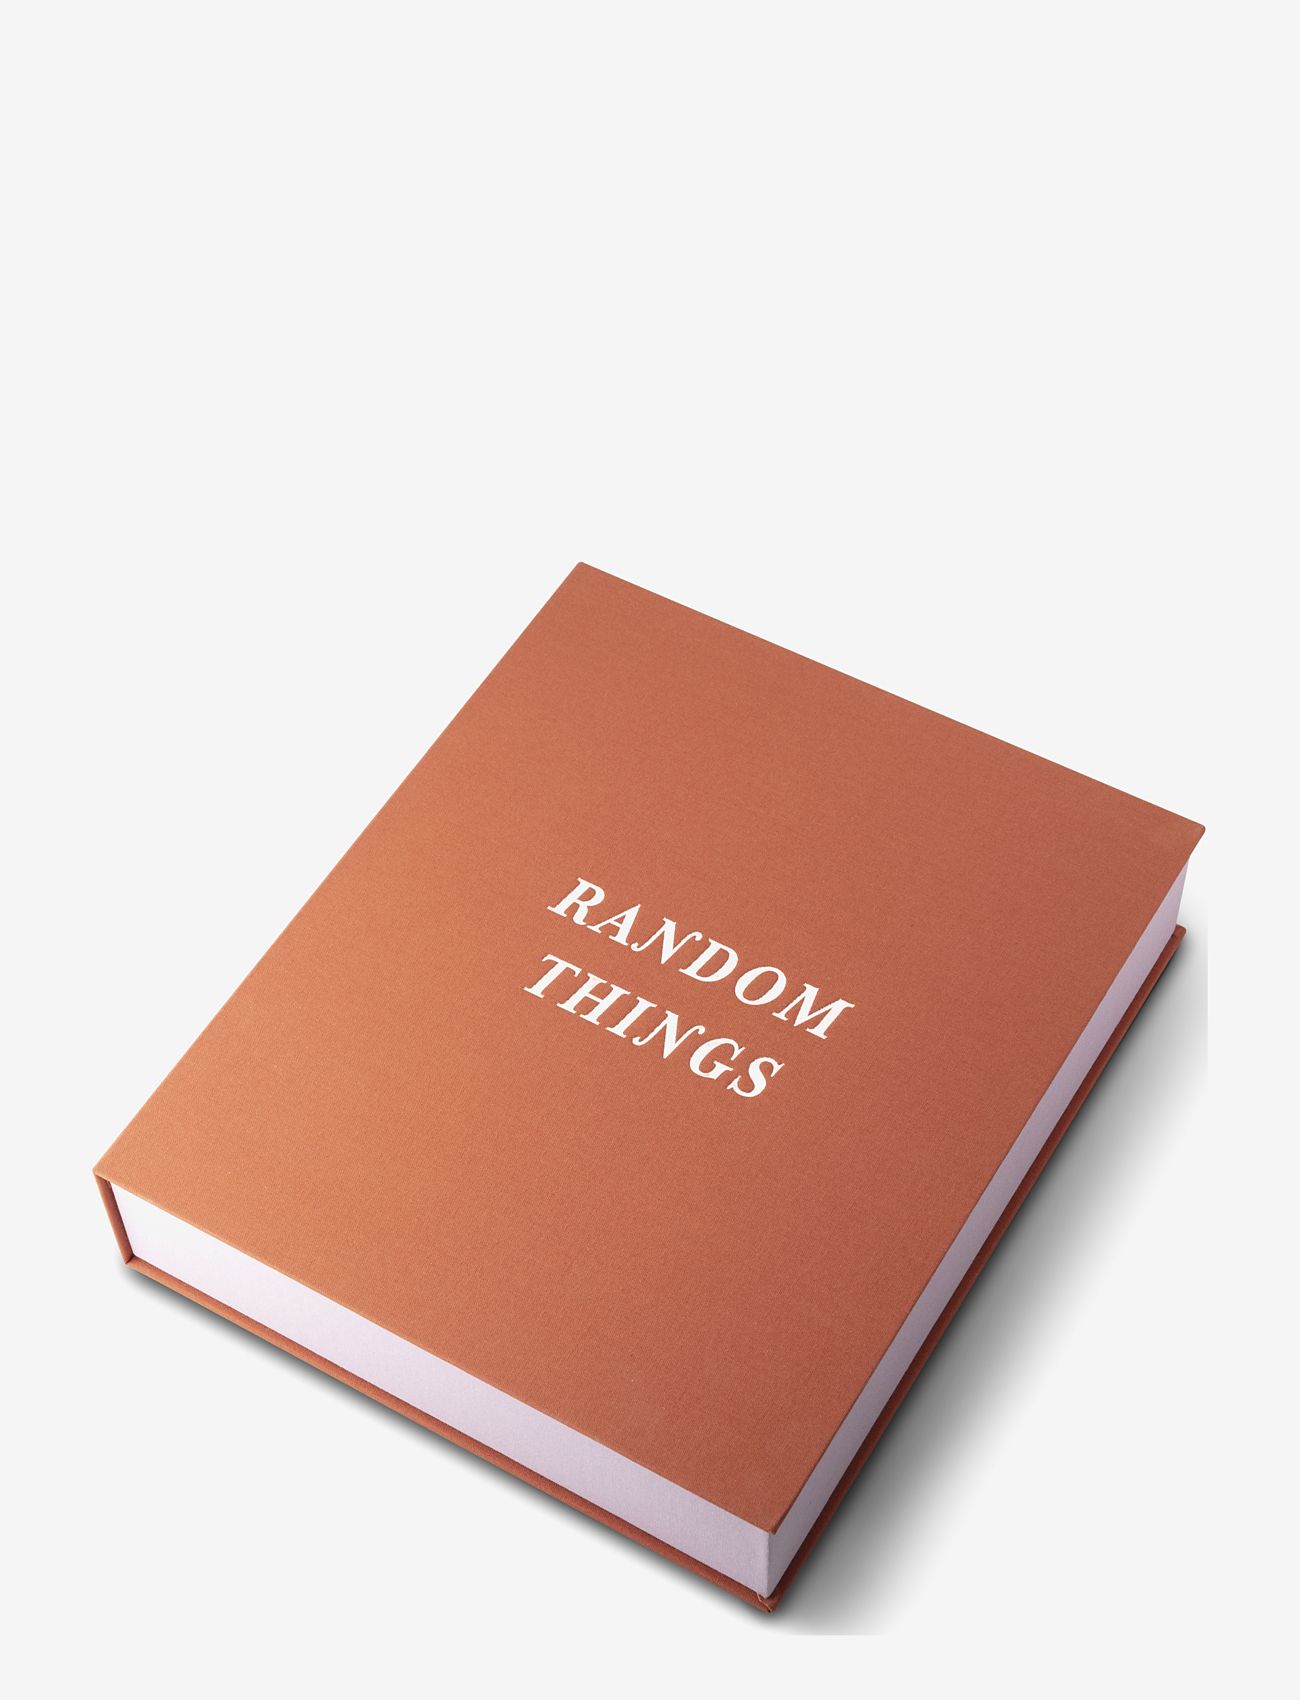 PRINTWORKS - Random things box - Rusty pink - die niedrigsten preise - pink - 0